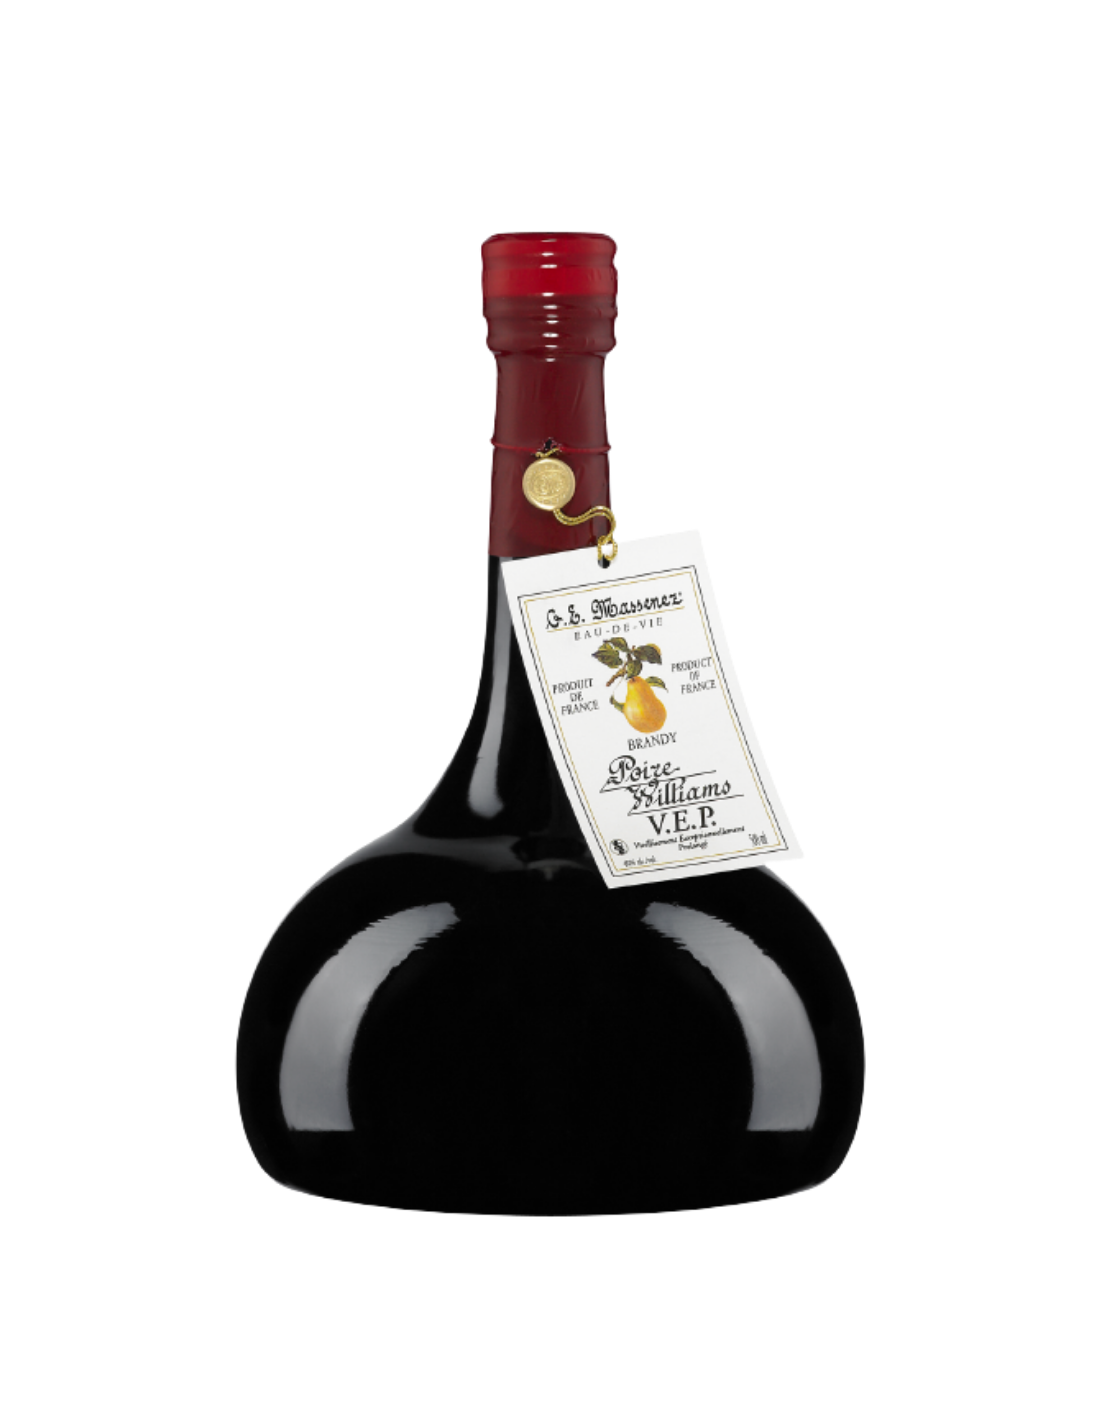 Brandy Massenez Poire Williams V.E.P., 40% alc., 0.5L, Franta alcooldiscount.ro